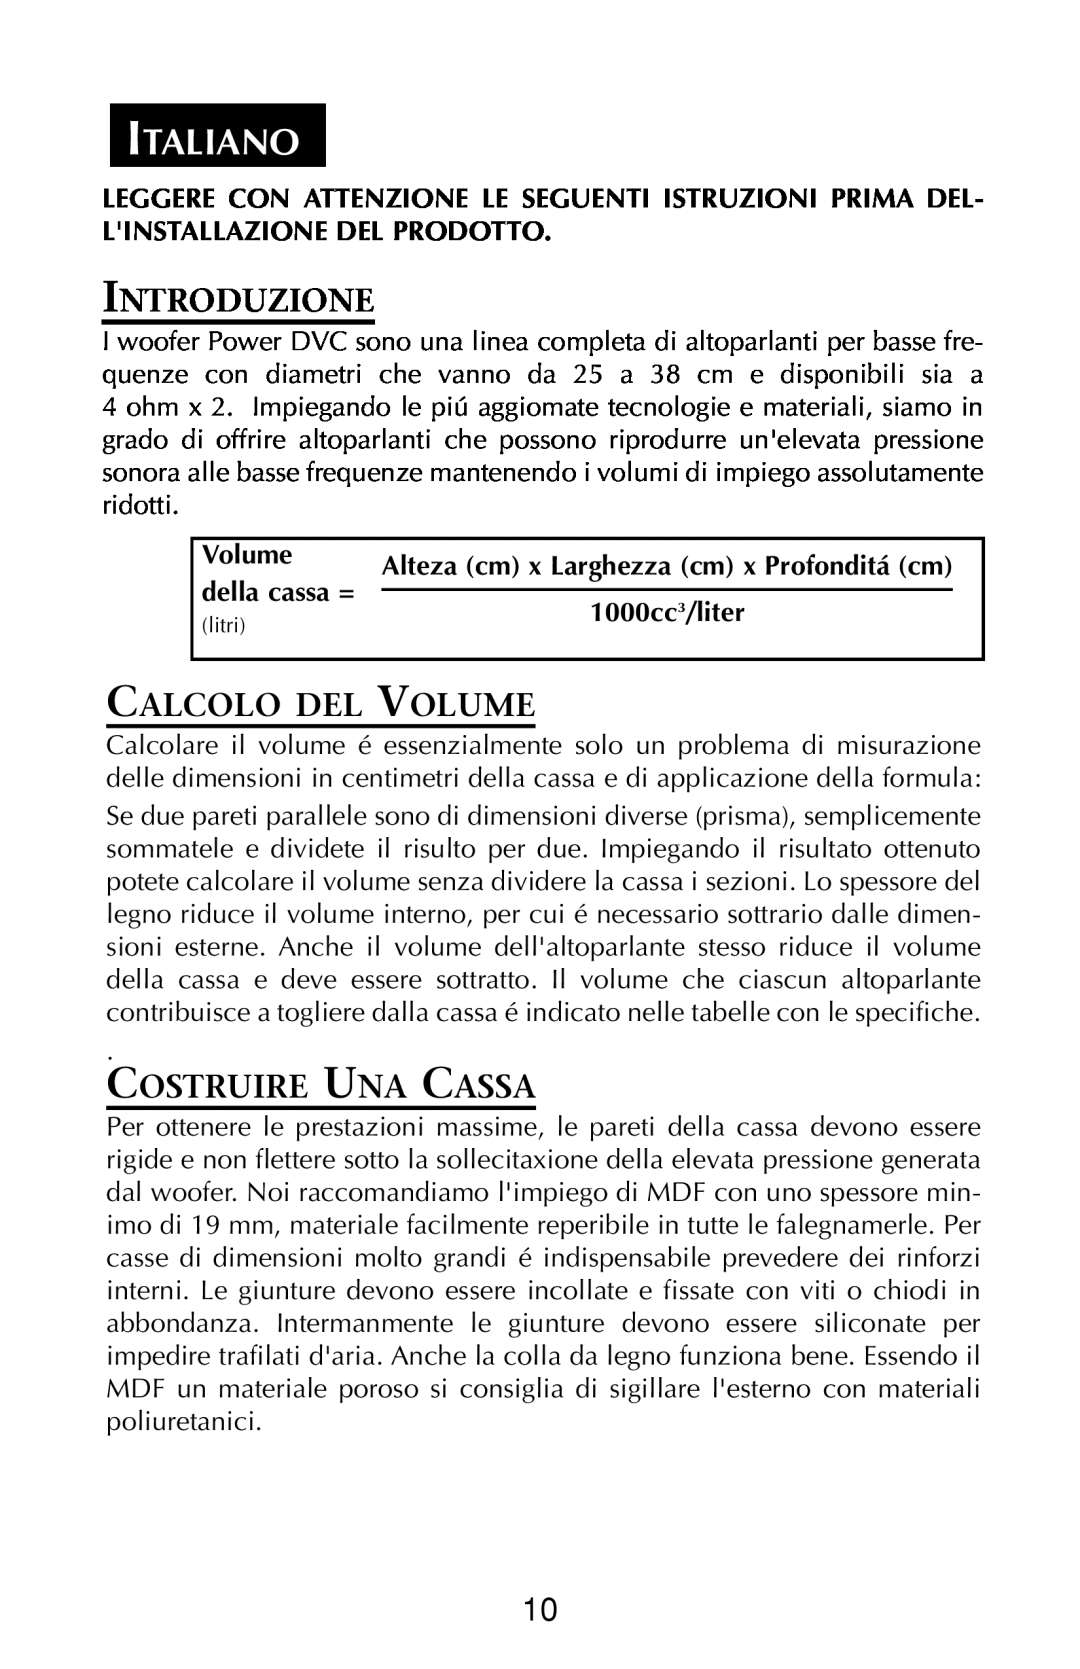 Rockford Fosgate RFP3208 Italiano, Introduzione, Calcolo Del Volume, Costruire Una Cassa, della cassa =, 1000cc3/liter 